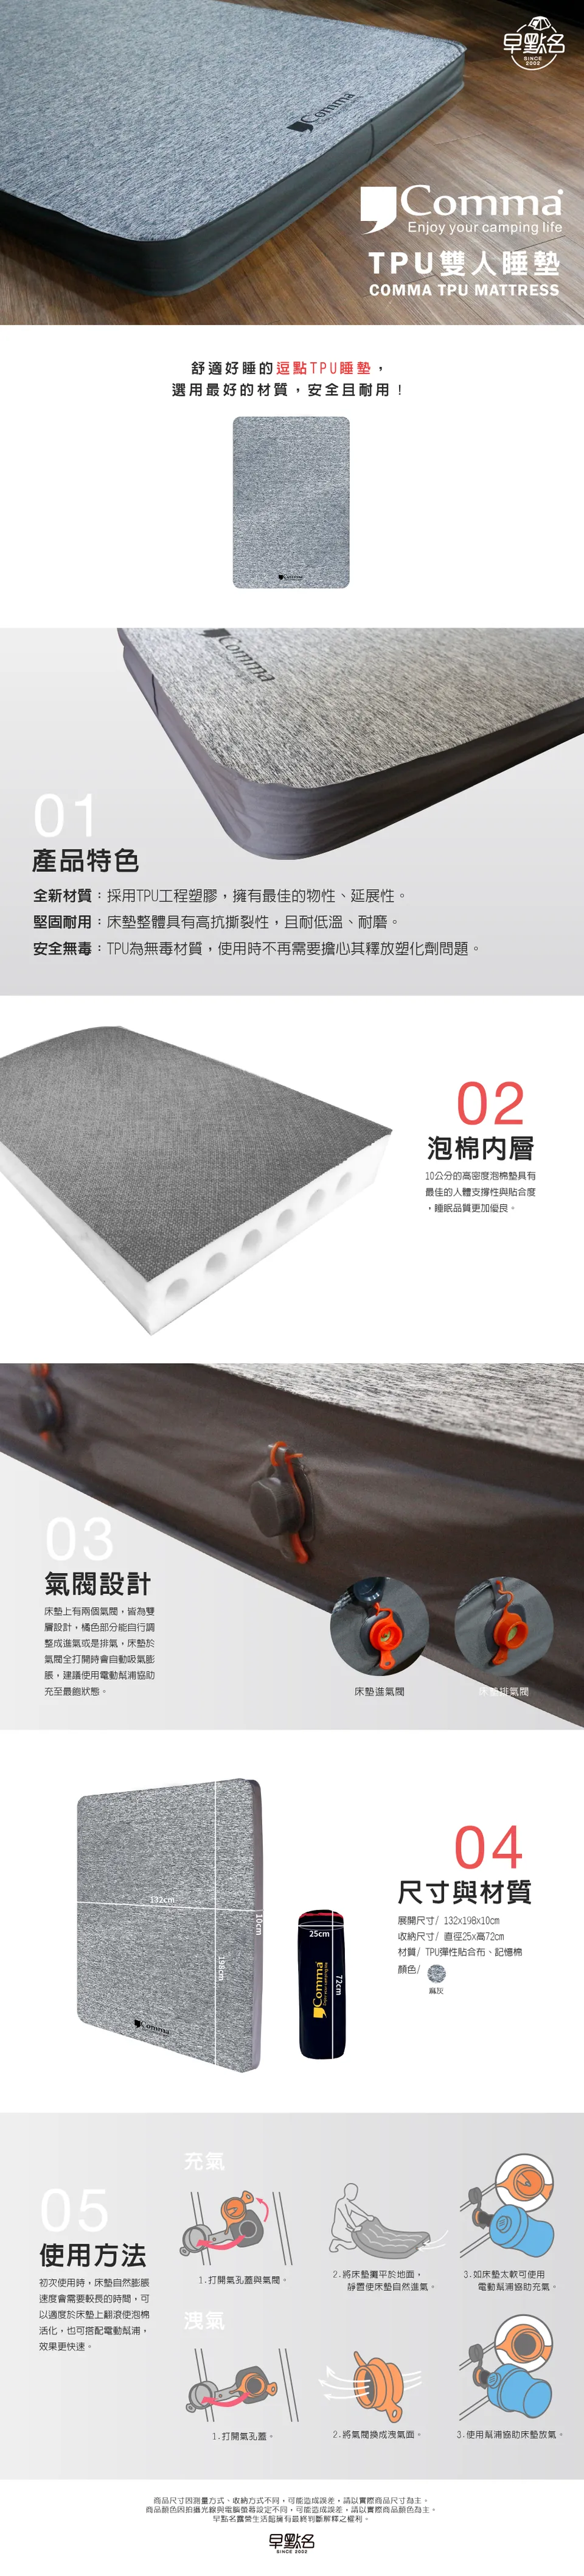 【逗點Comma】TPU 3D 高密度記憶泡棉床墊－灰色－逗點雙人床L號